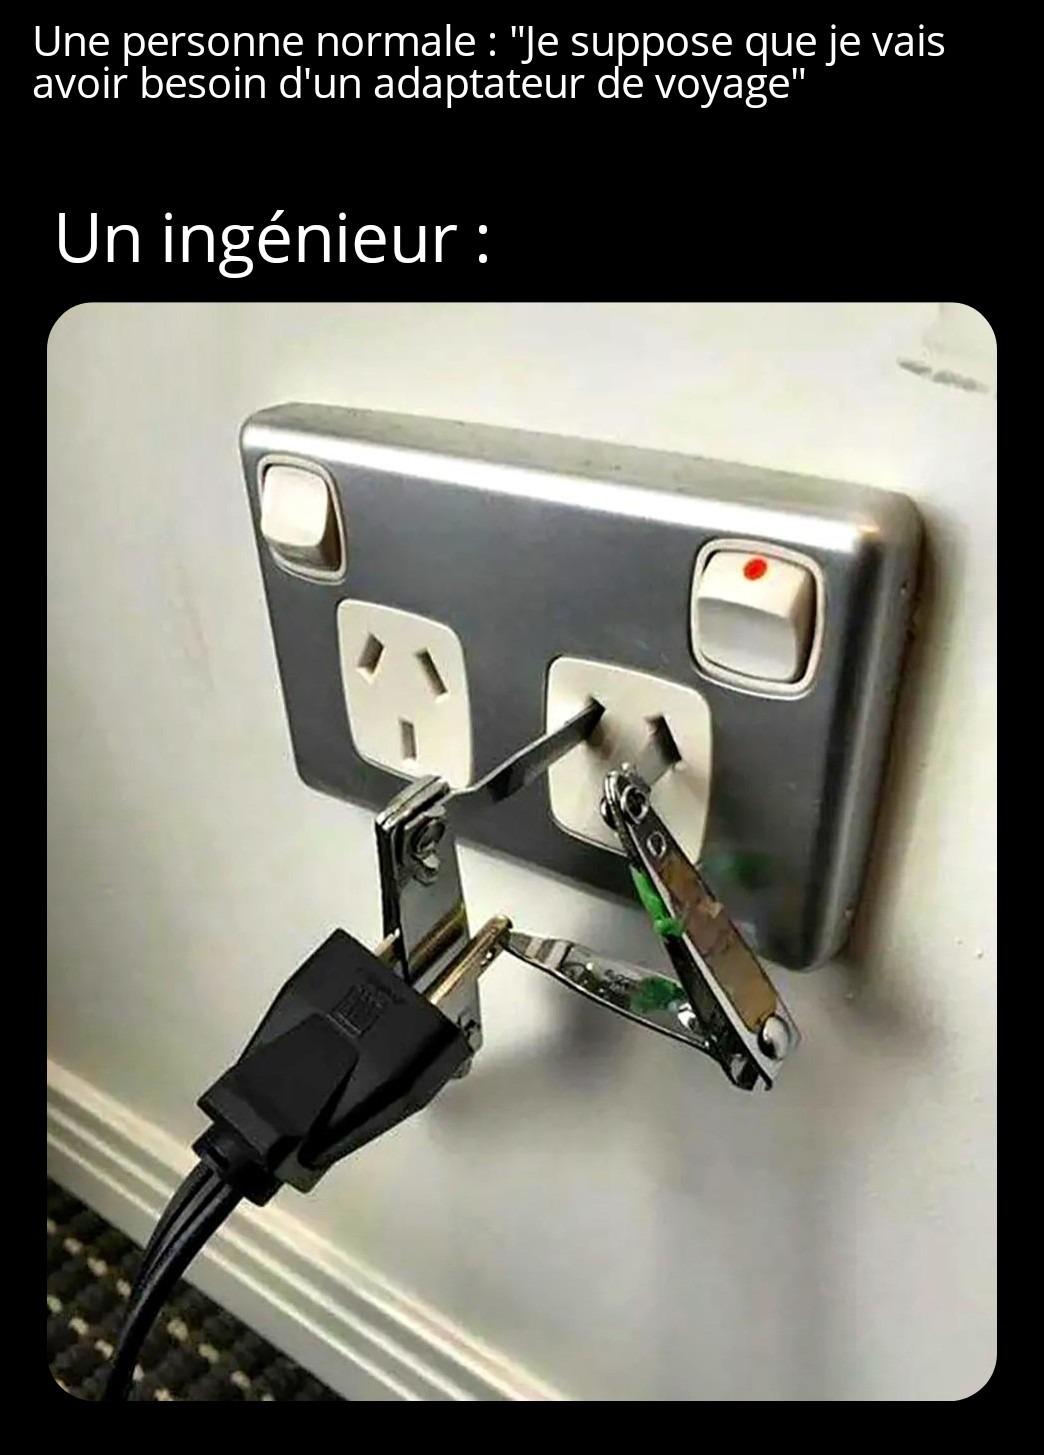 Un ingénieur ingénieux - meme